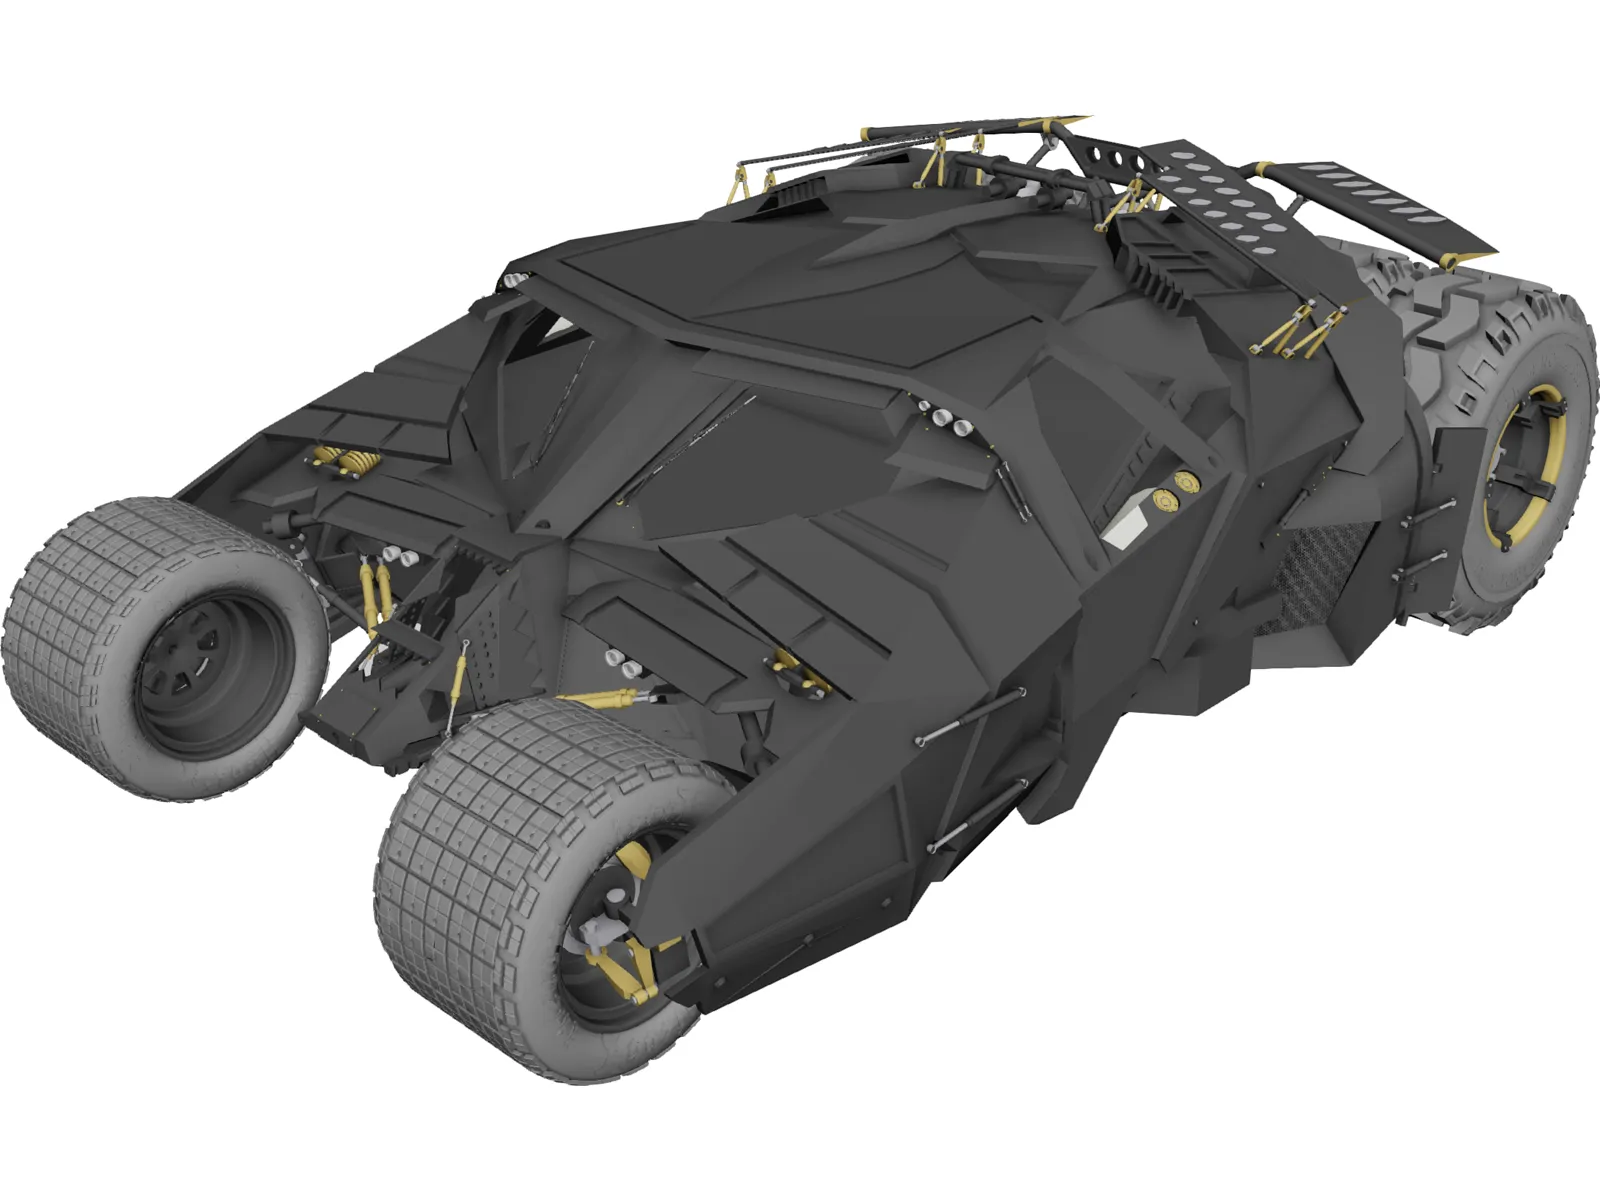 Batman Tumbler Car 3D Model - 3DCADBrowser